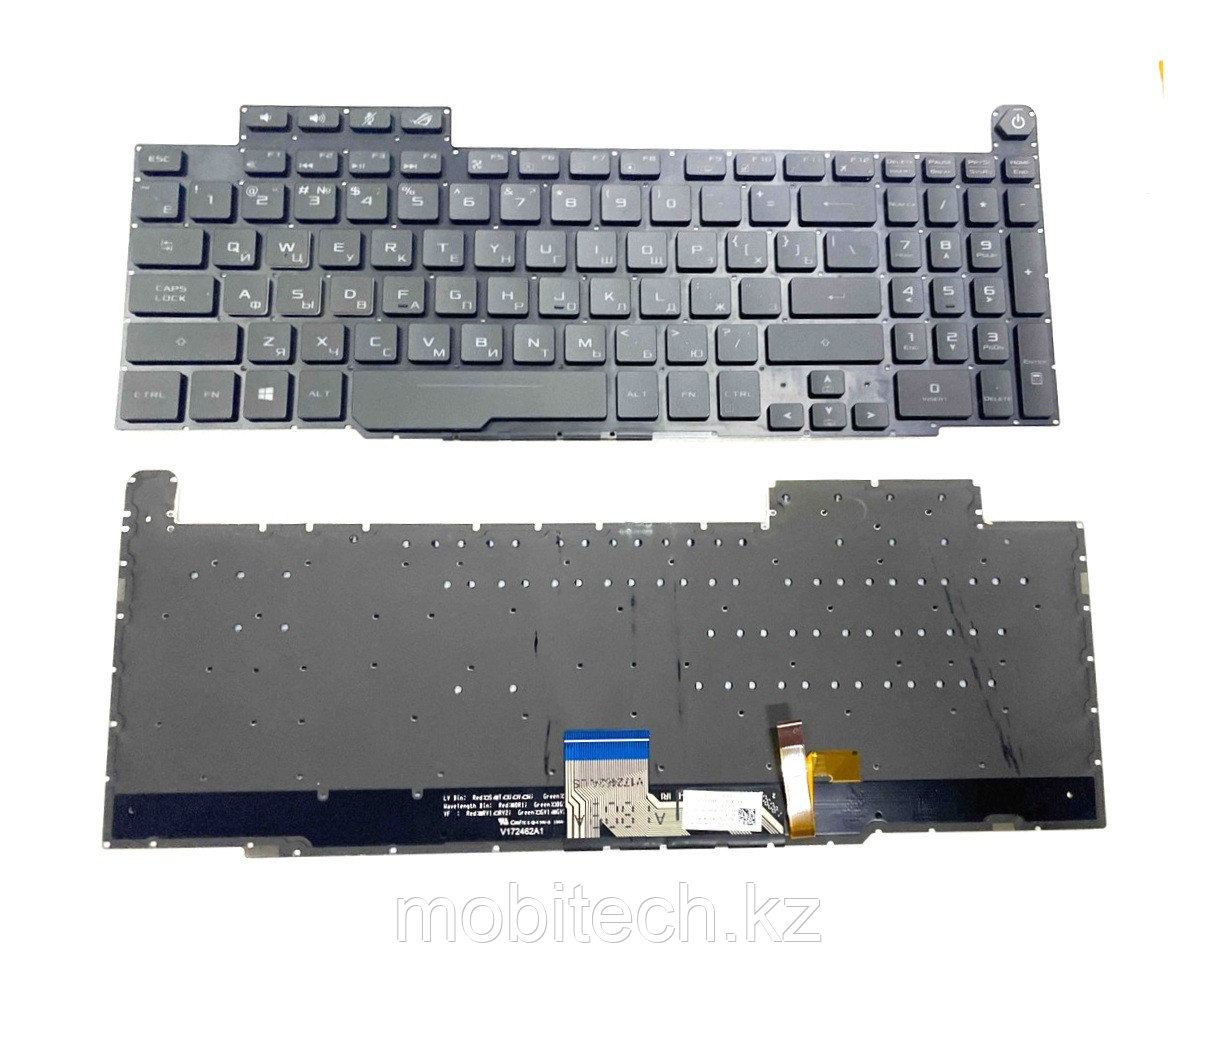 Клавиатуры Asus GM501 GM501GM GM501GS GTX1060 клавиатура c EN/RU раскладкой без подсветкой